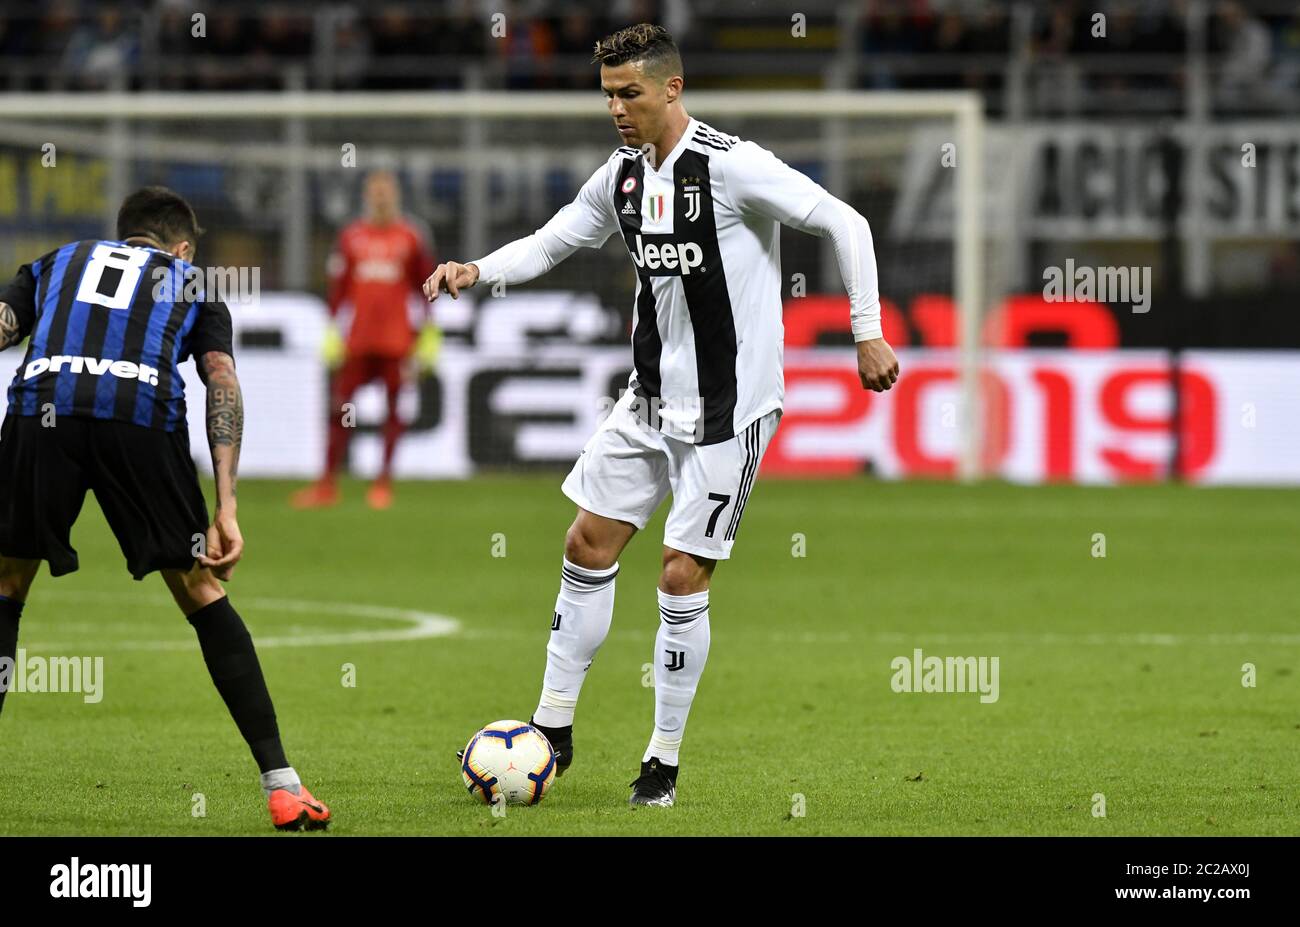 La stella portoghese del calcio Cristiano Ronaldo, della Juventus F.C., allo stadio di calcio san siro, a Milano. Foto Stock